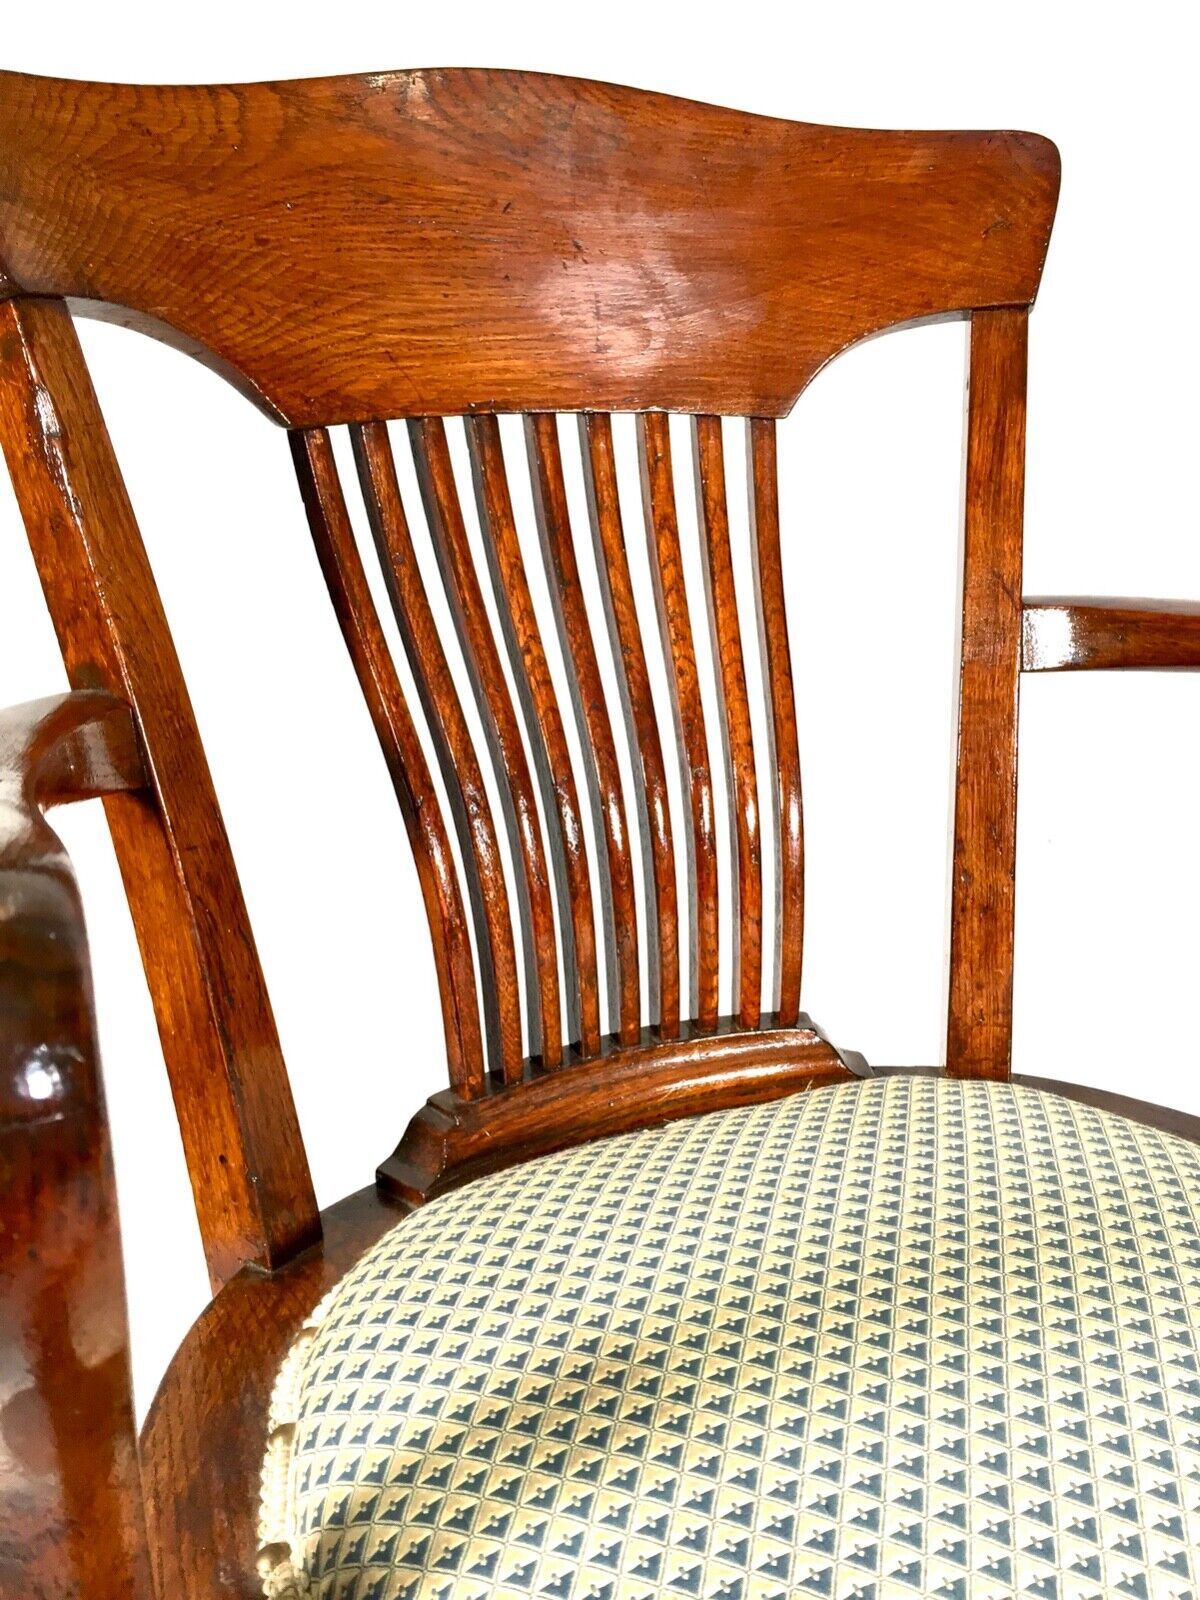 Antique Wooden Oak Revolving Captains Desk Chair / Cushioned Seat c.1920